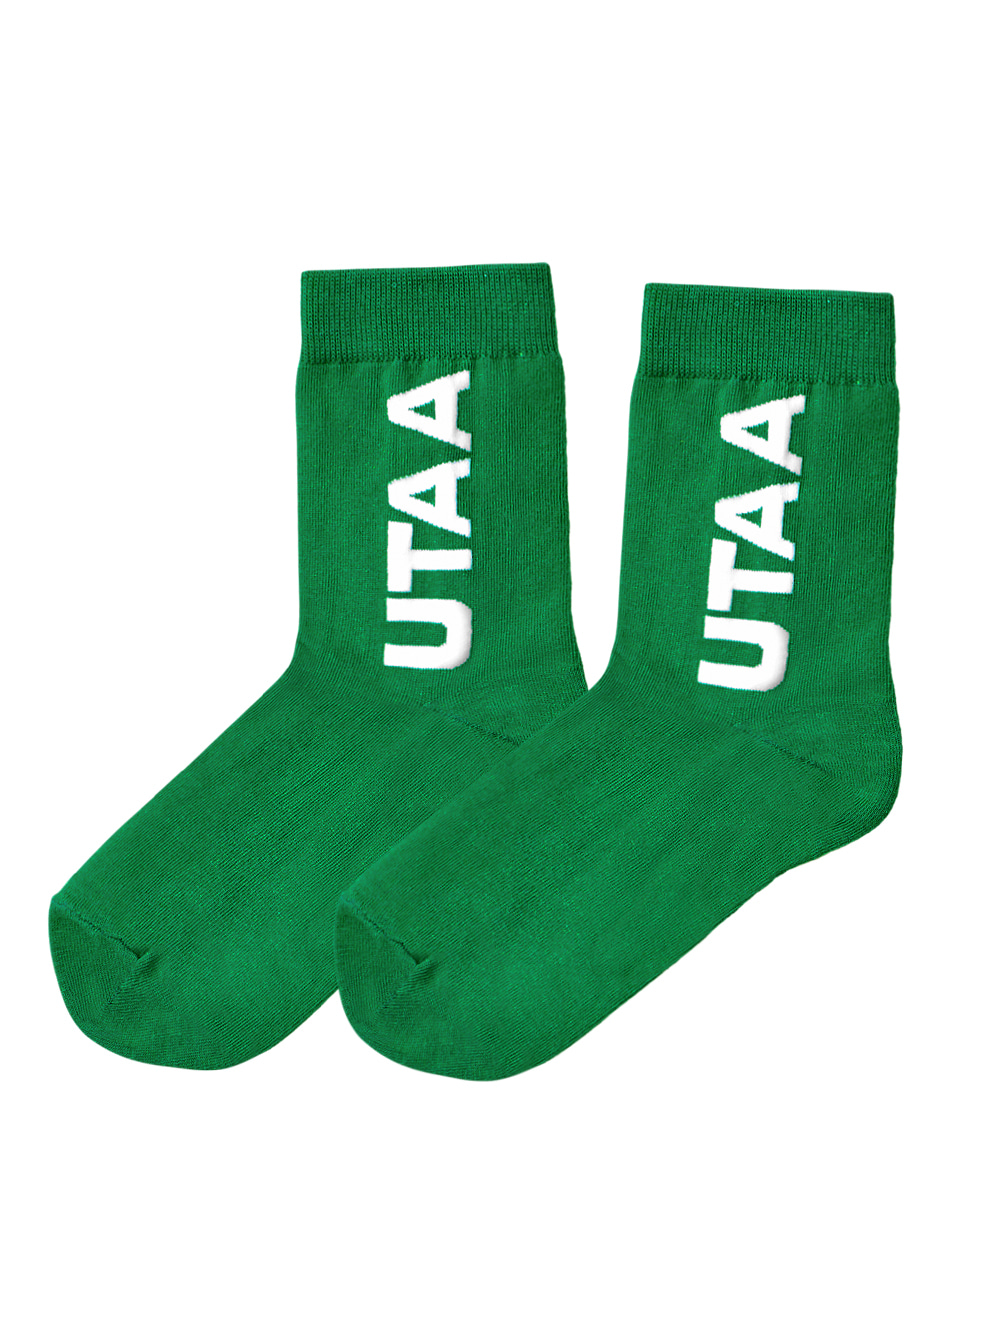 UTAA Logo Socks : Green (UB0GSF152GN)